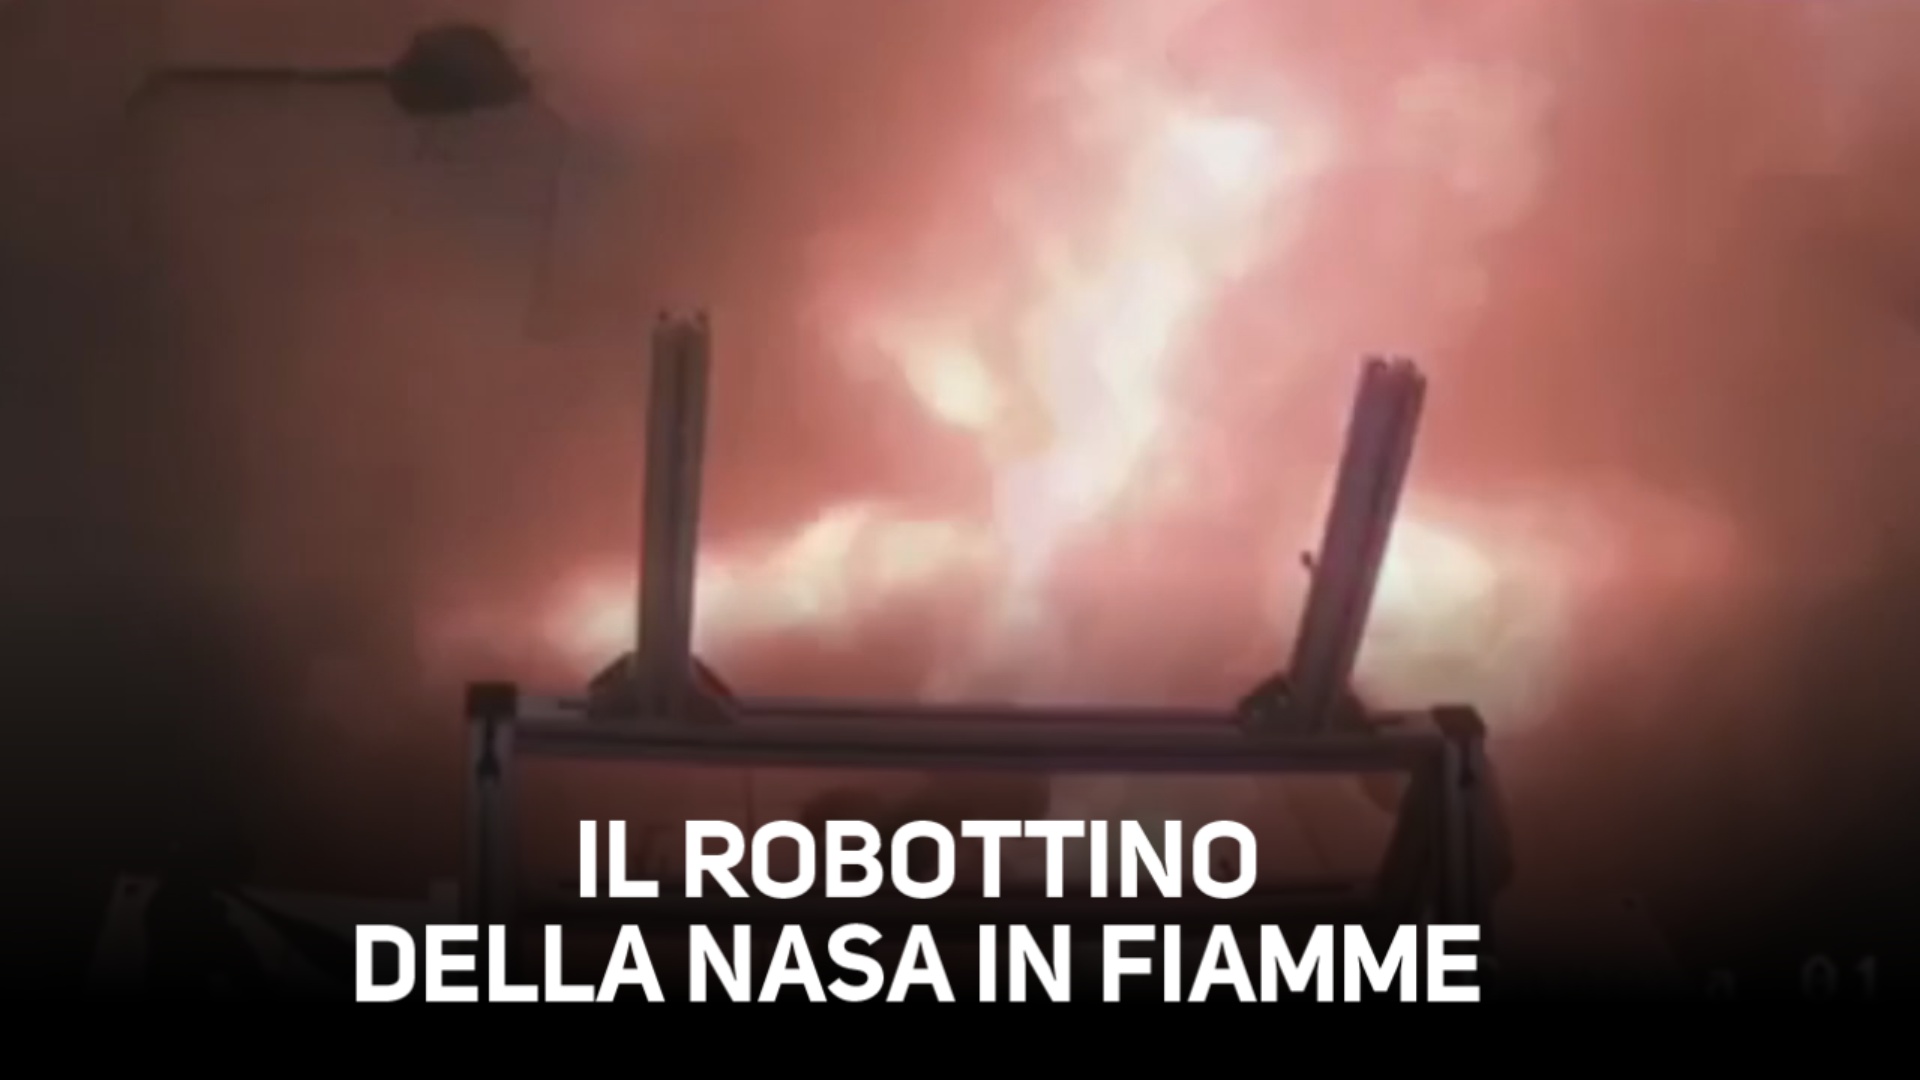 Batterie esplosive, prende fuoco il robot della Nasa